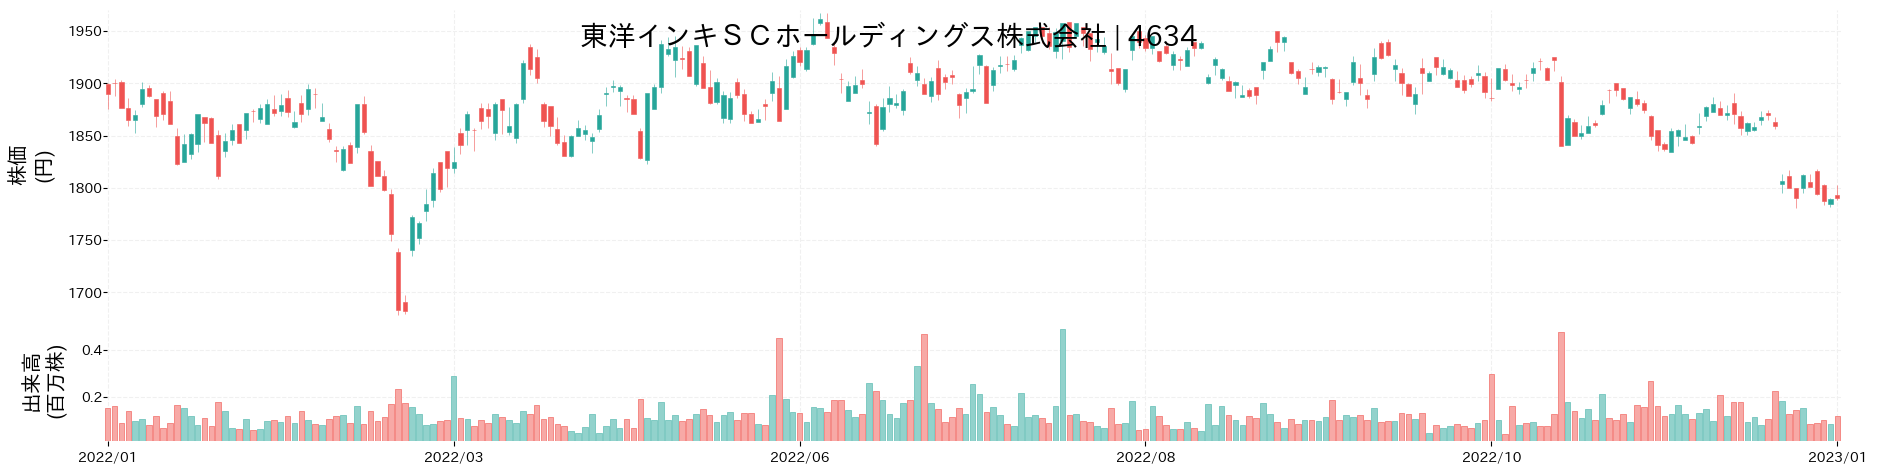 東洋インキSCホールディングスの株価推移(2022)